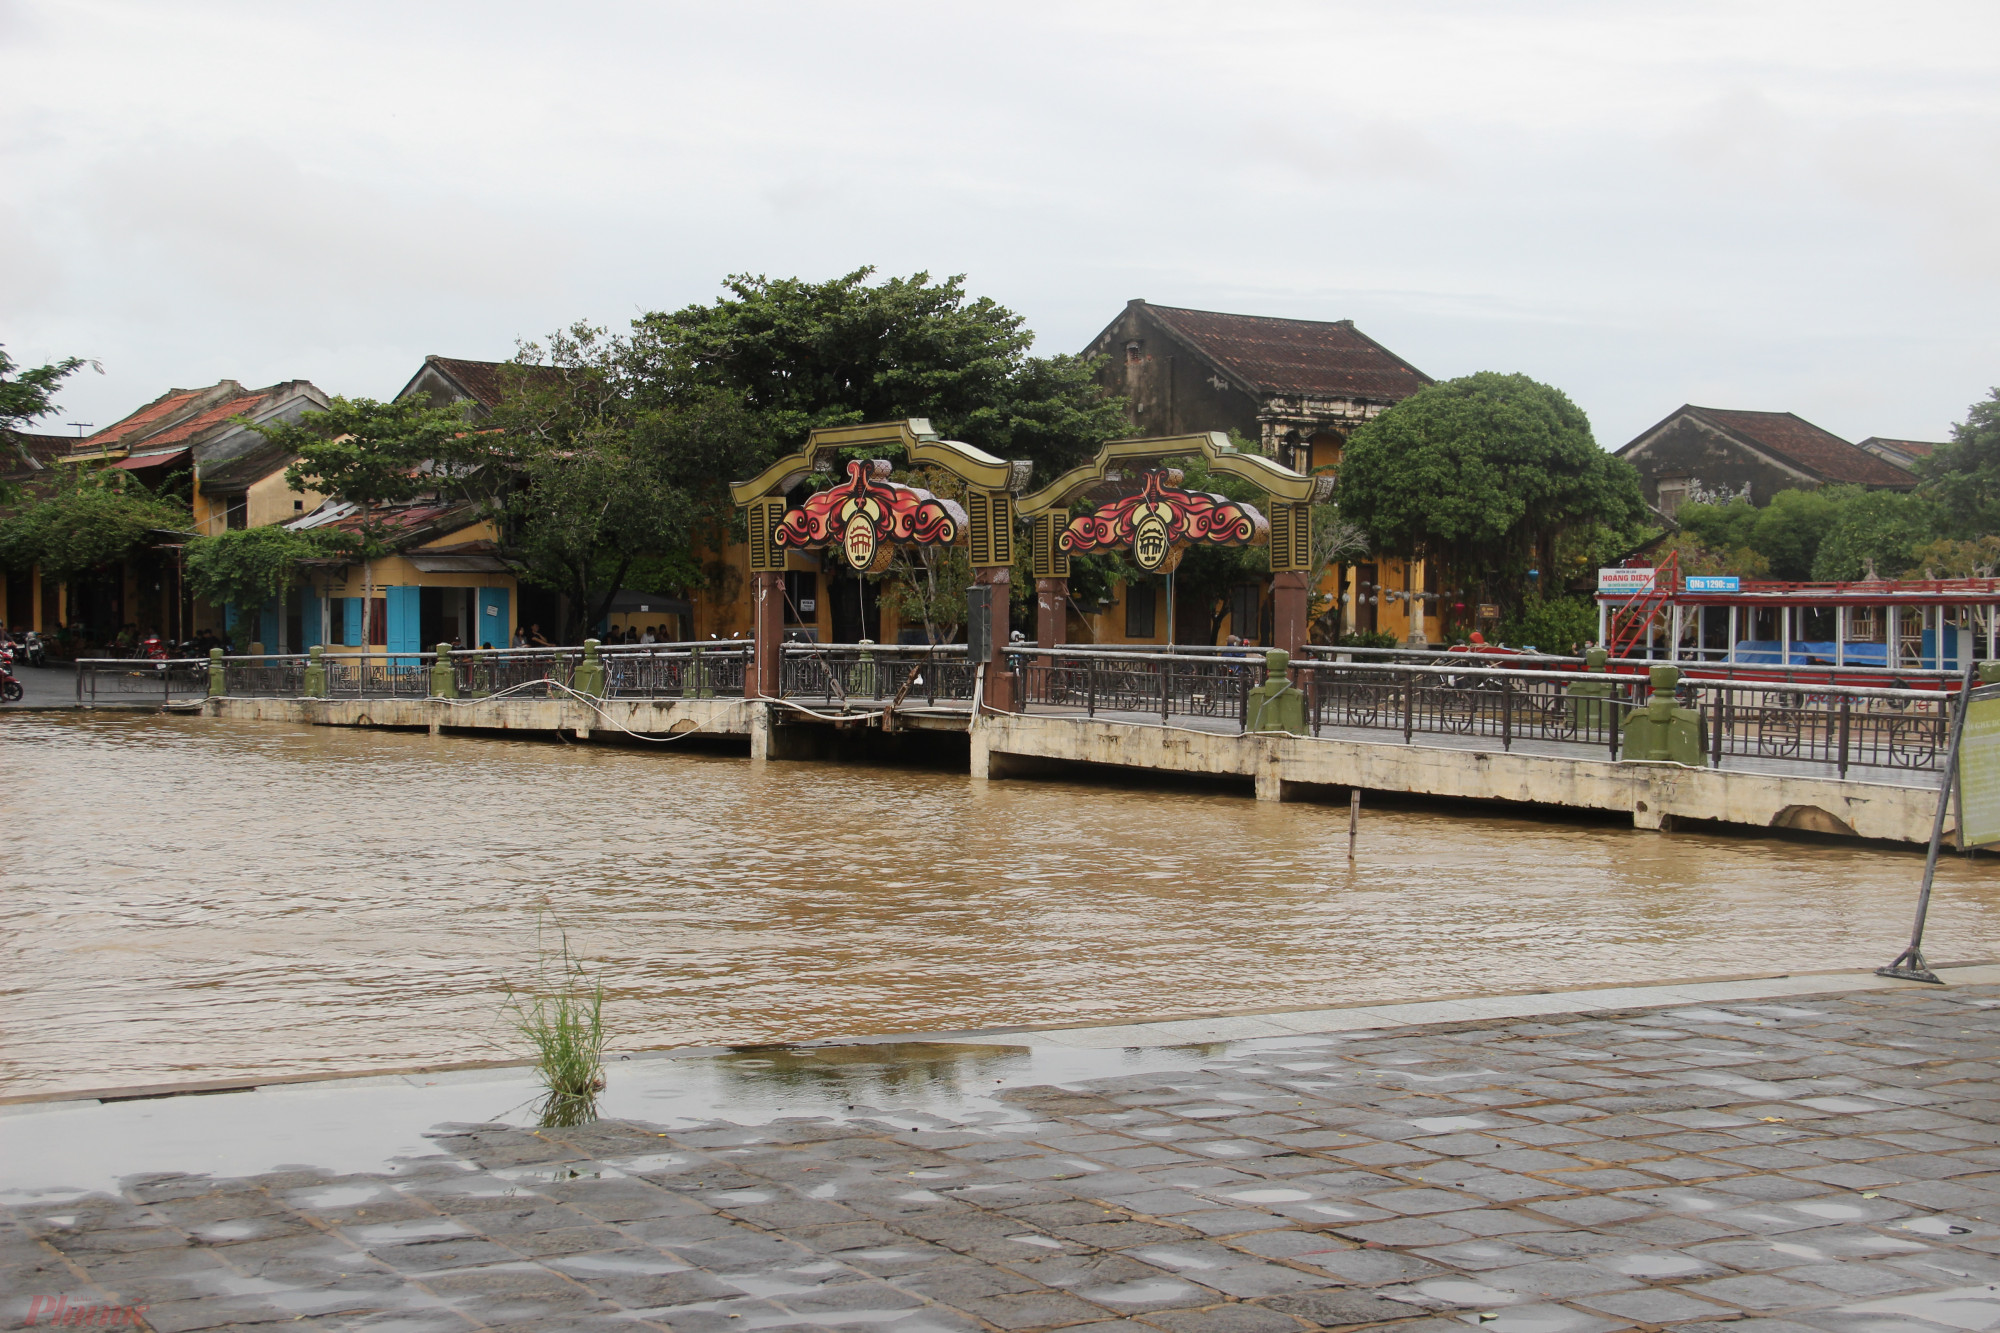 Phố cổ Hội An nằm ở hạ du sông Thu Bồn nên luôn bị ngập sớm nhất khi có mưa lũ hoặc thuỷ điện xả lũ